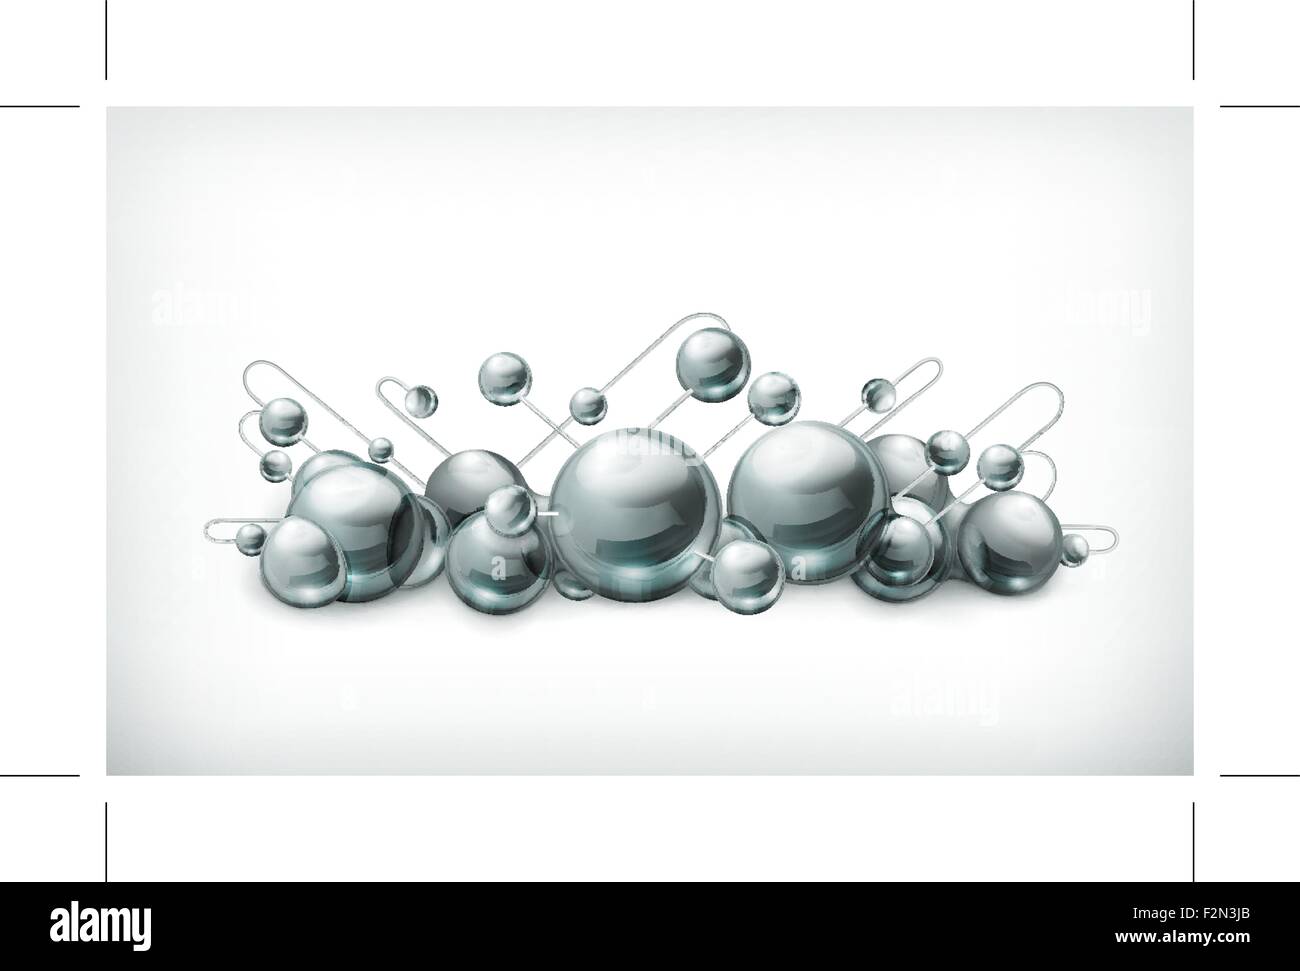 Molécules et atomes vector illustration Illustration de Vecteur